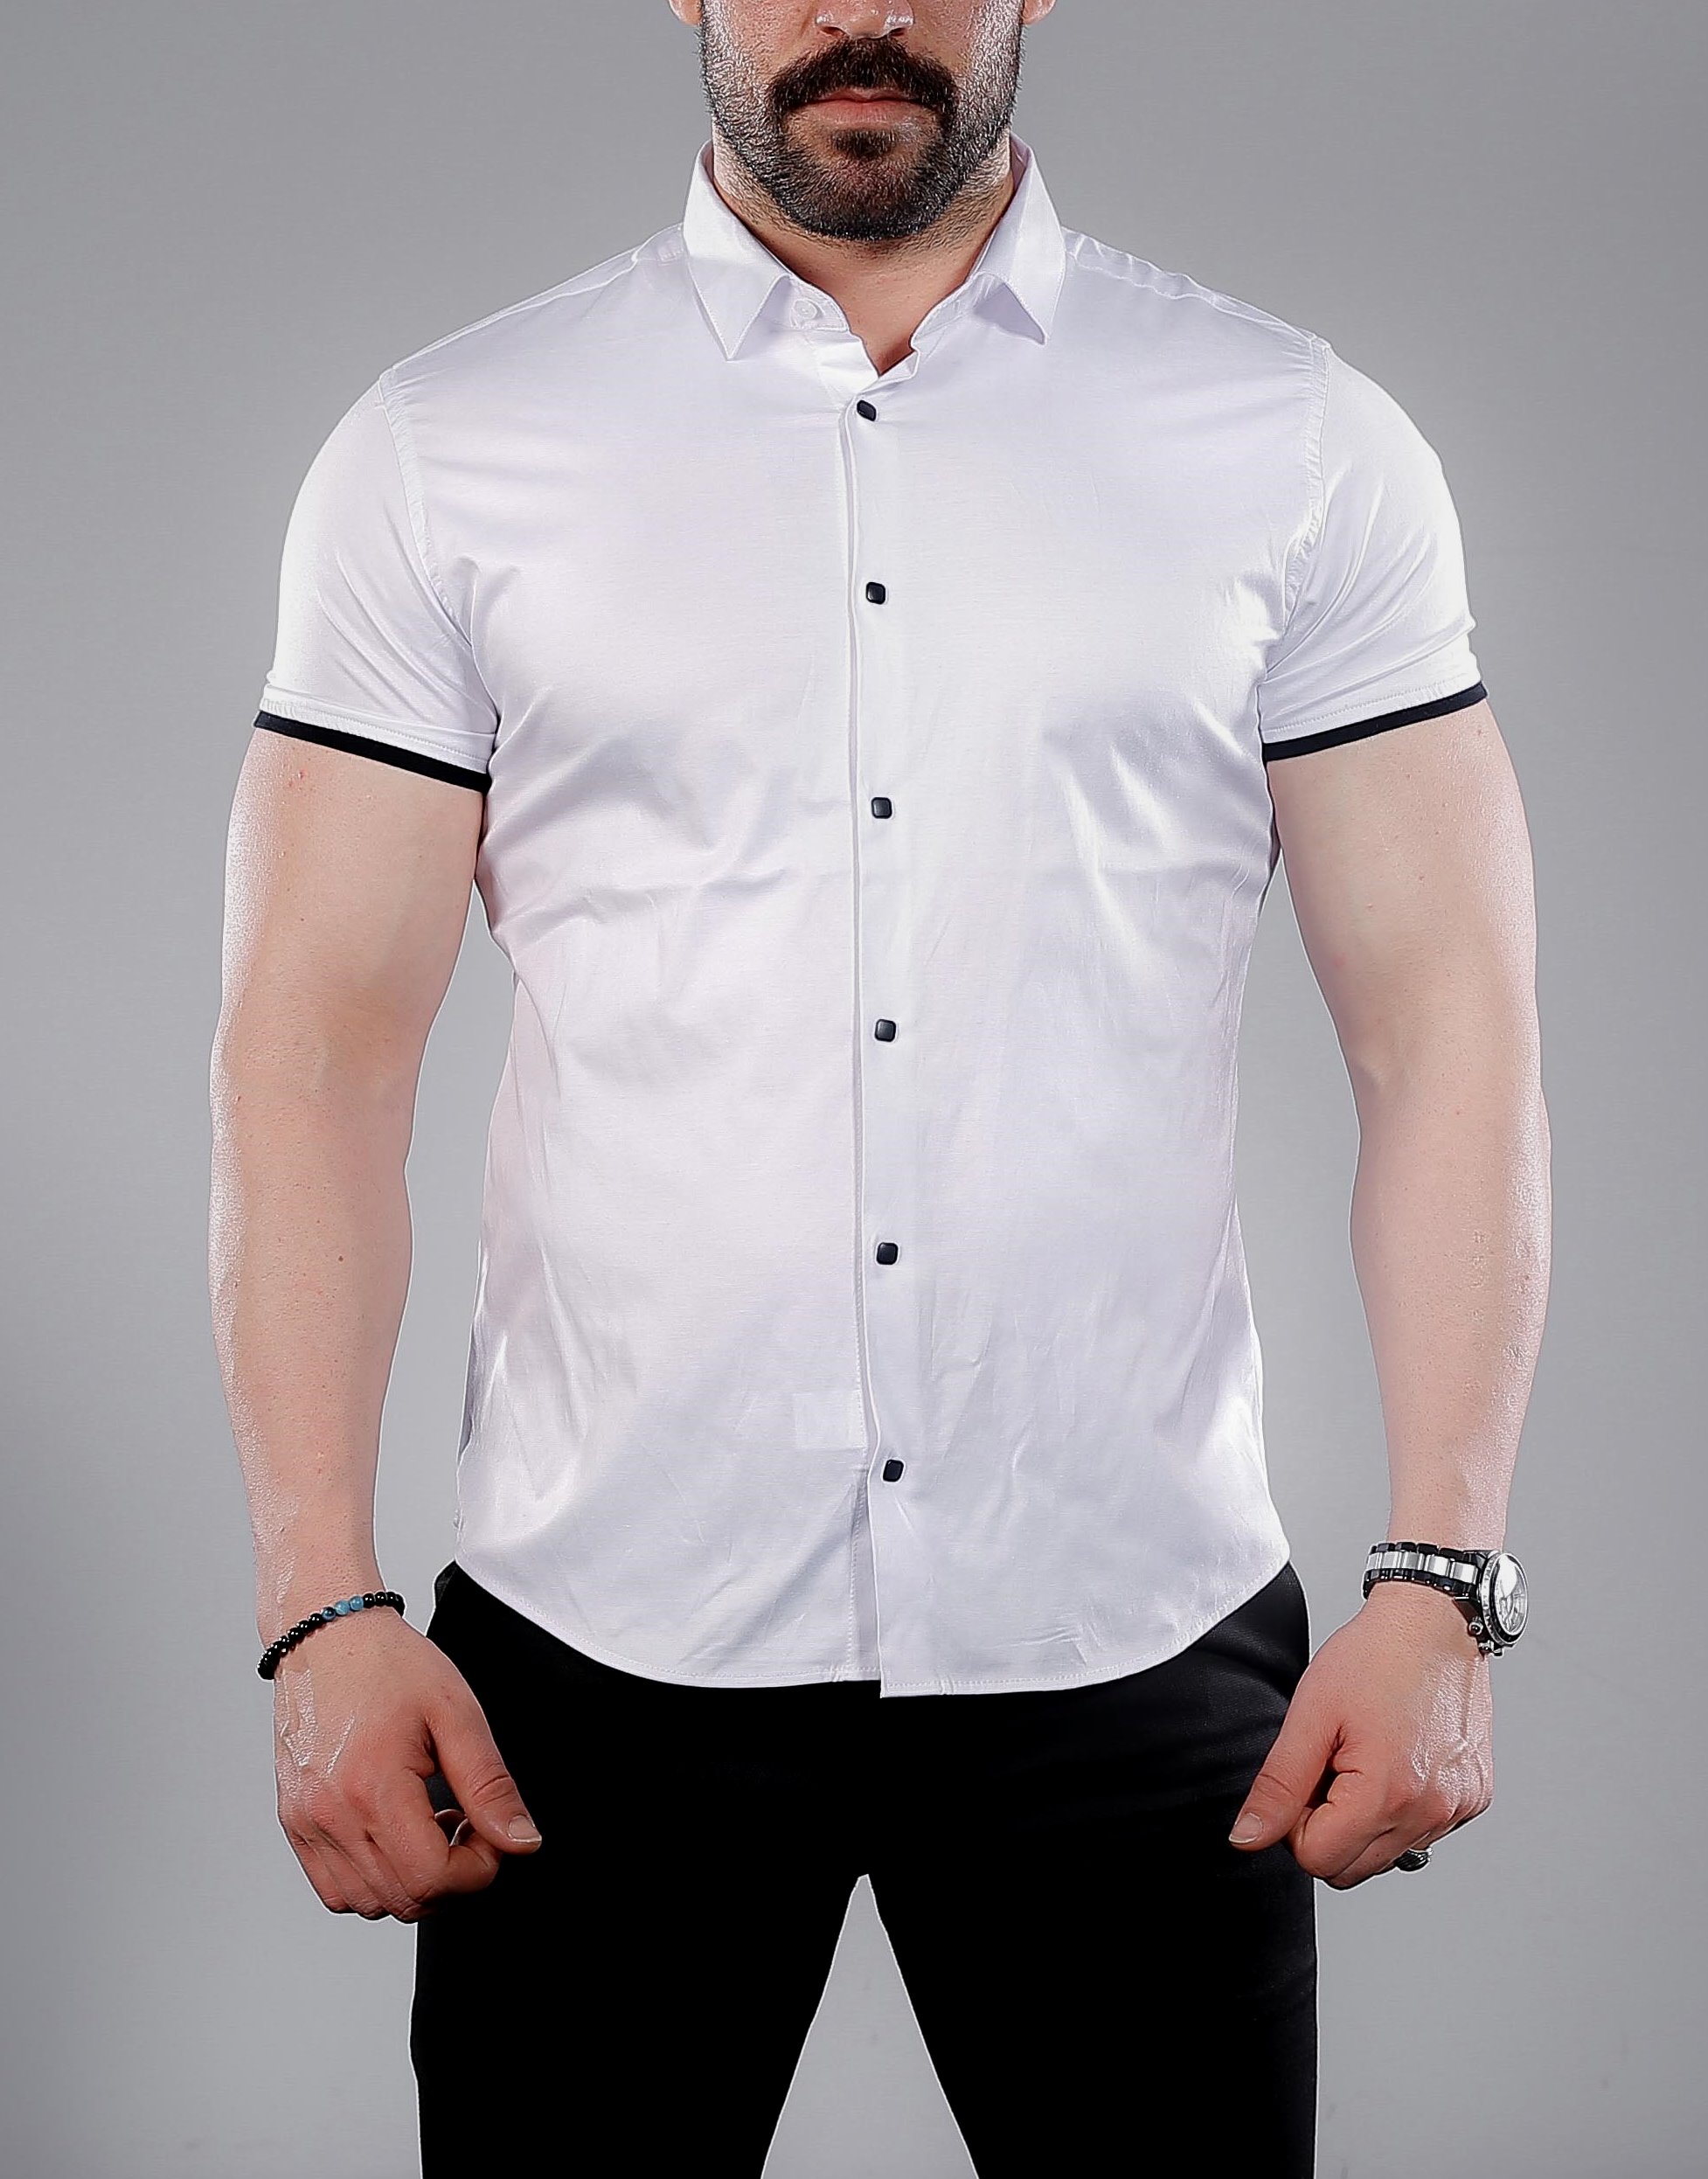 Рубашка мужская купить в интернет магазине. Рубашка мужская. Стильные мужские рубашки. Рубаха с коротким рукавом мужская. Мужская белая рубашка.